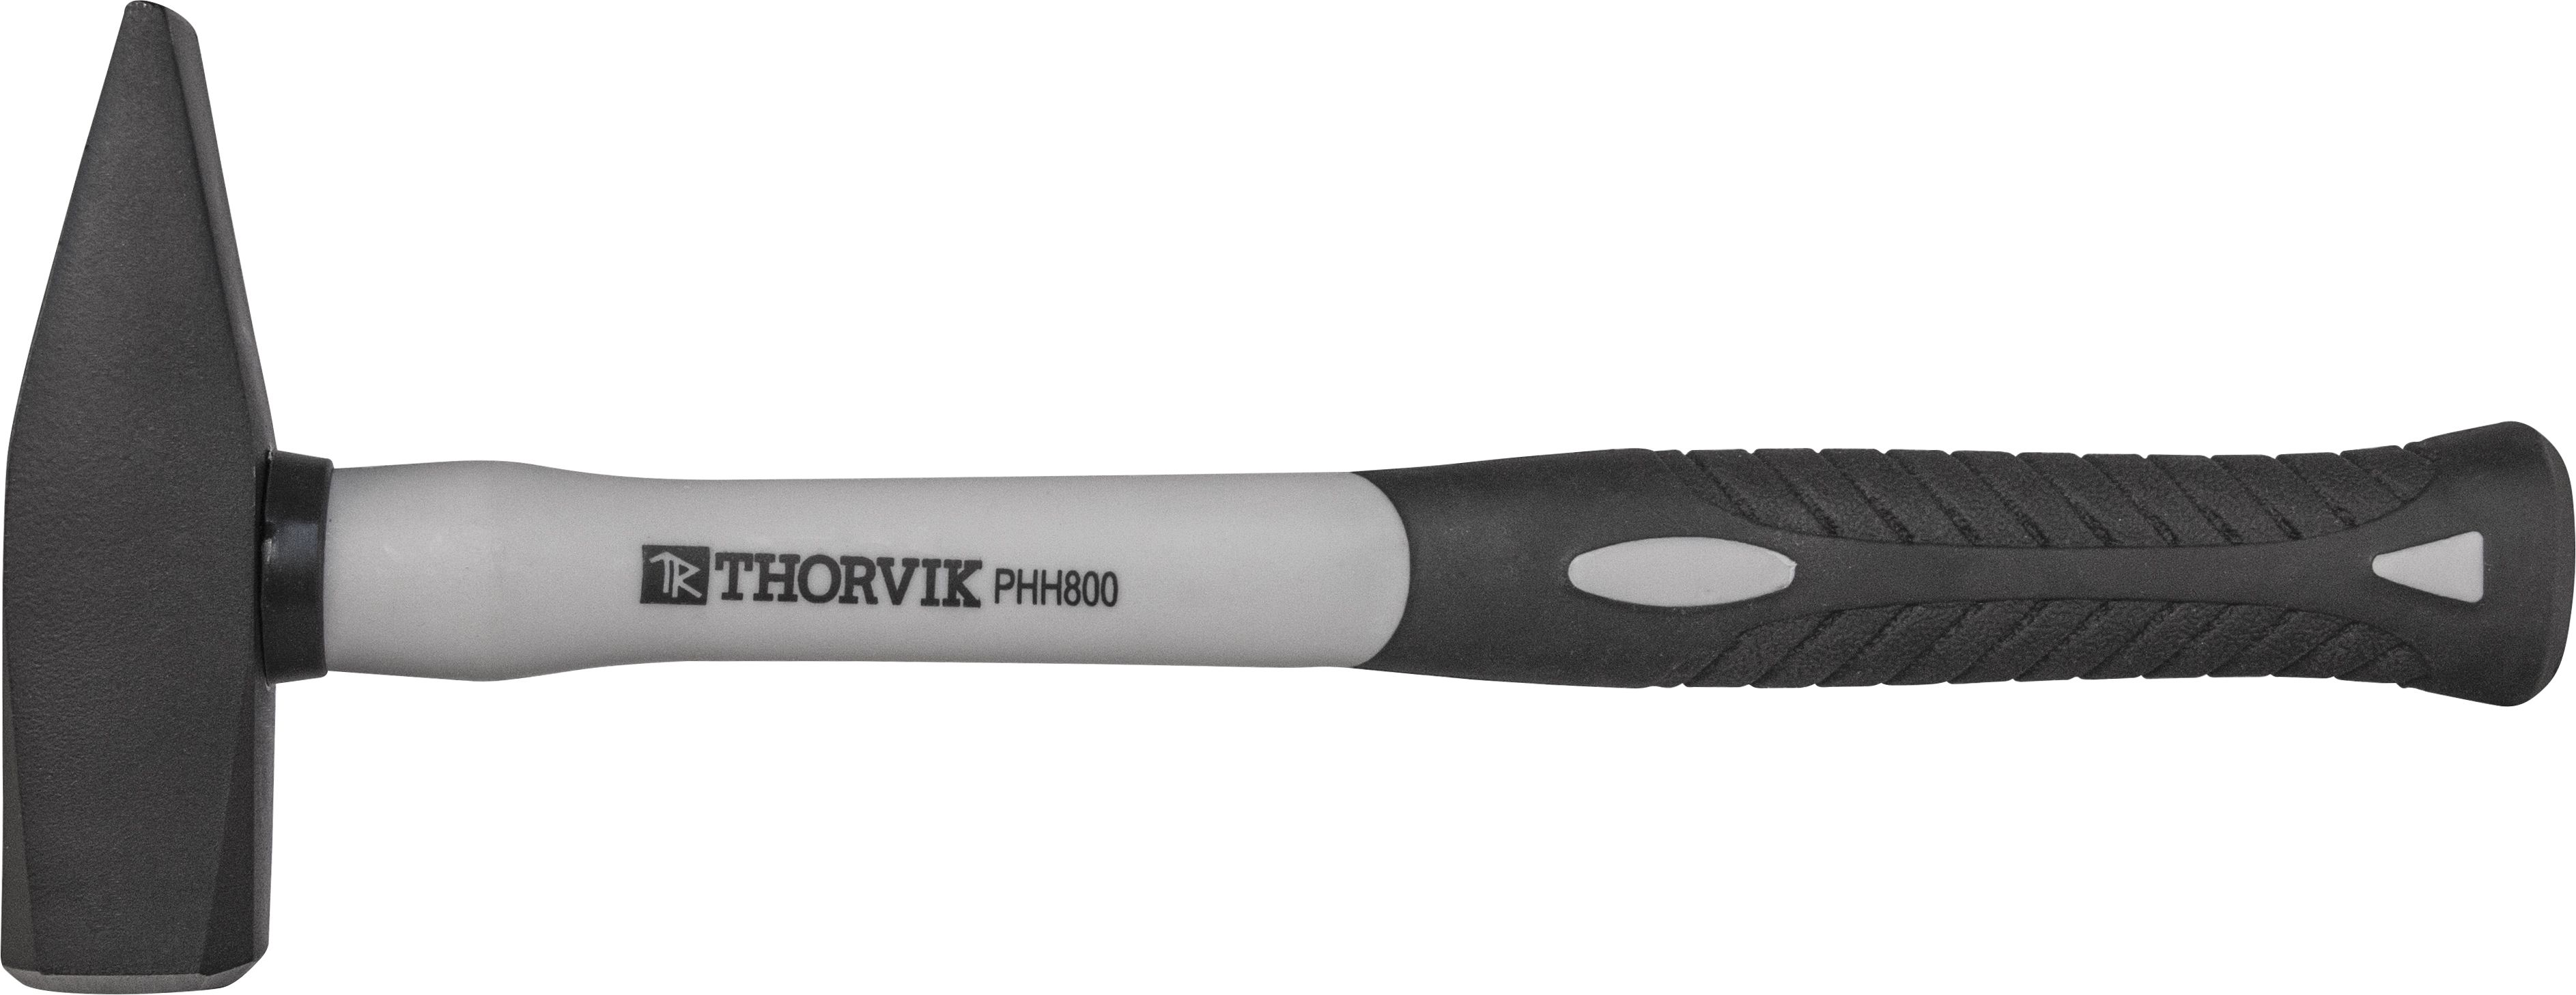 Молоток 1 кг ручка стеклопластиковая Thorvik